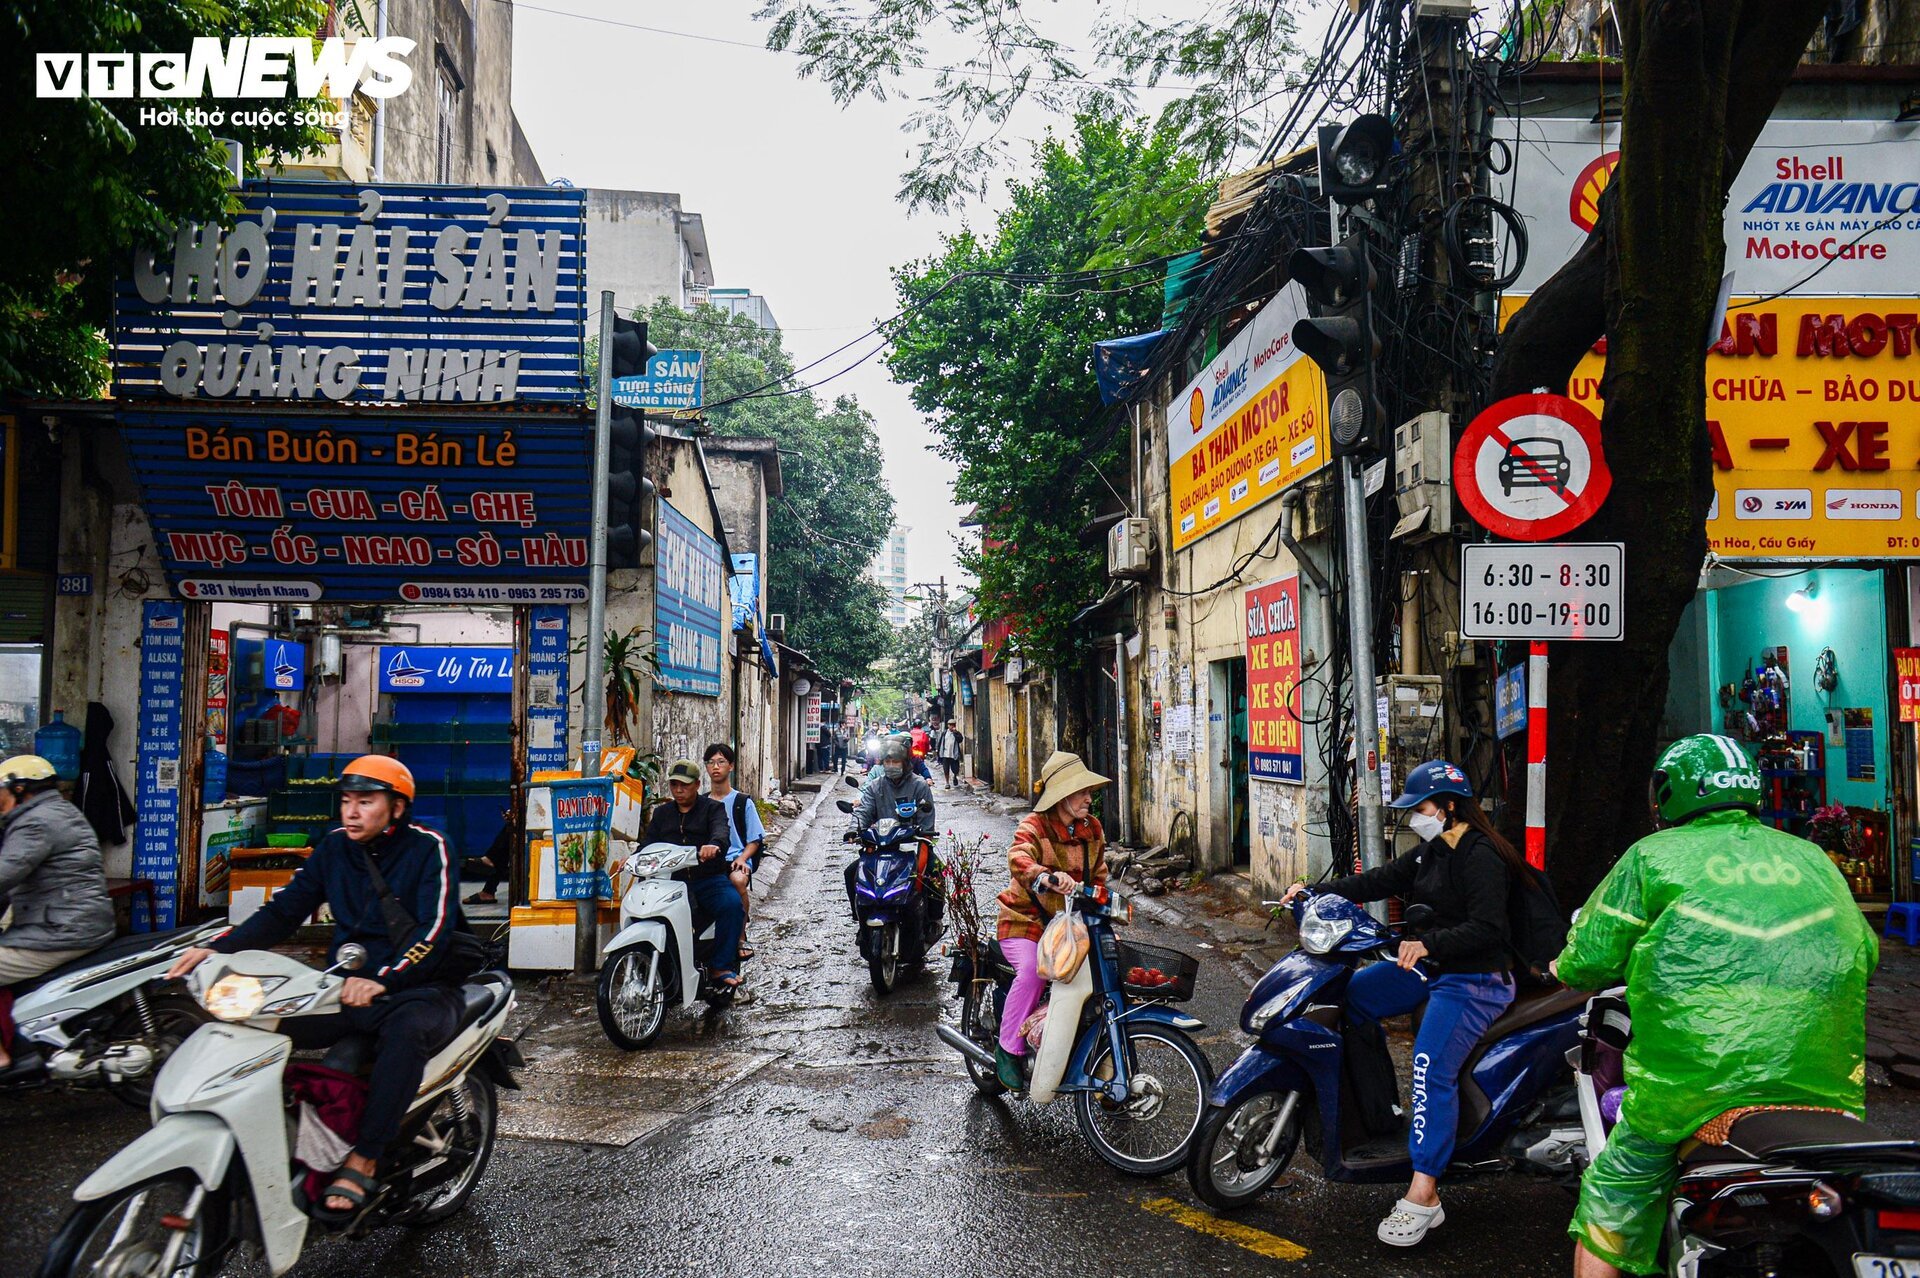 Con ngõ huyết mạch ở Hà Nội mòn mỏi chờ mở rộng, dân vấp ổ gà ngã xe như cơm bữa - Ảnh 2.